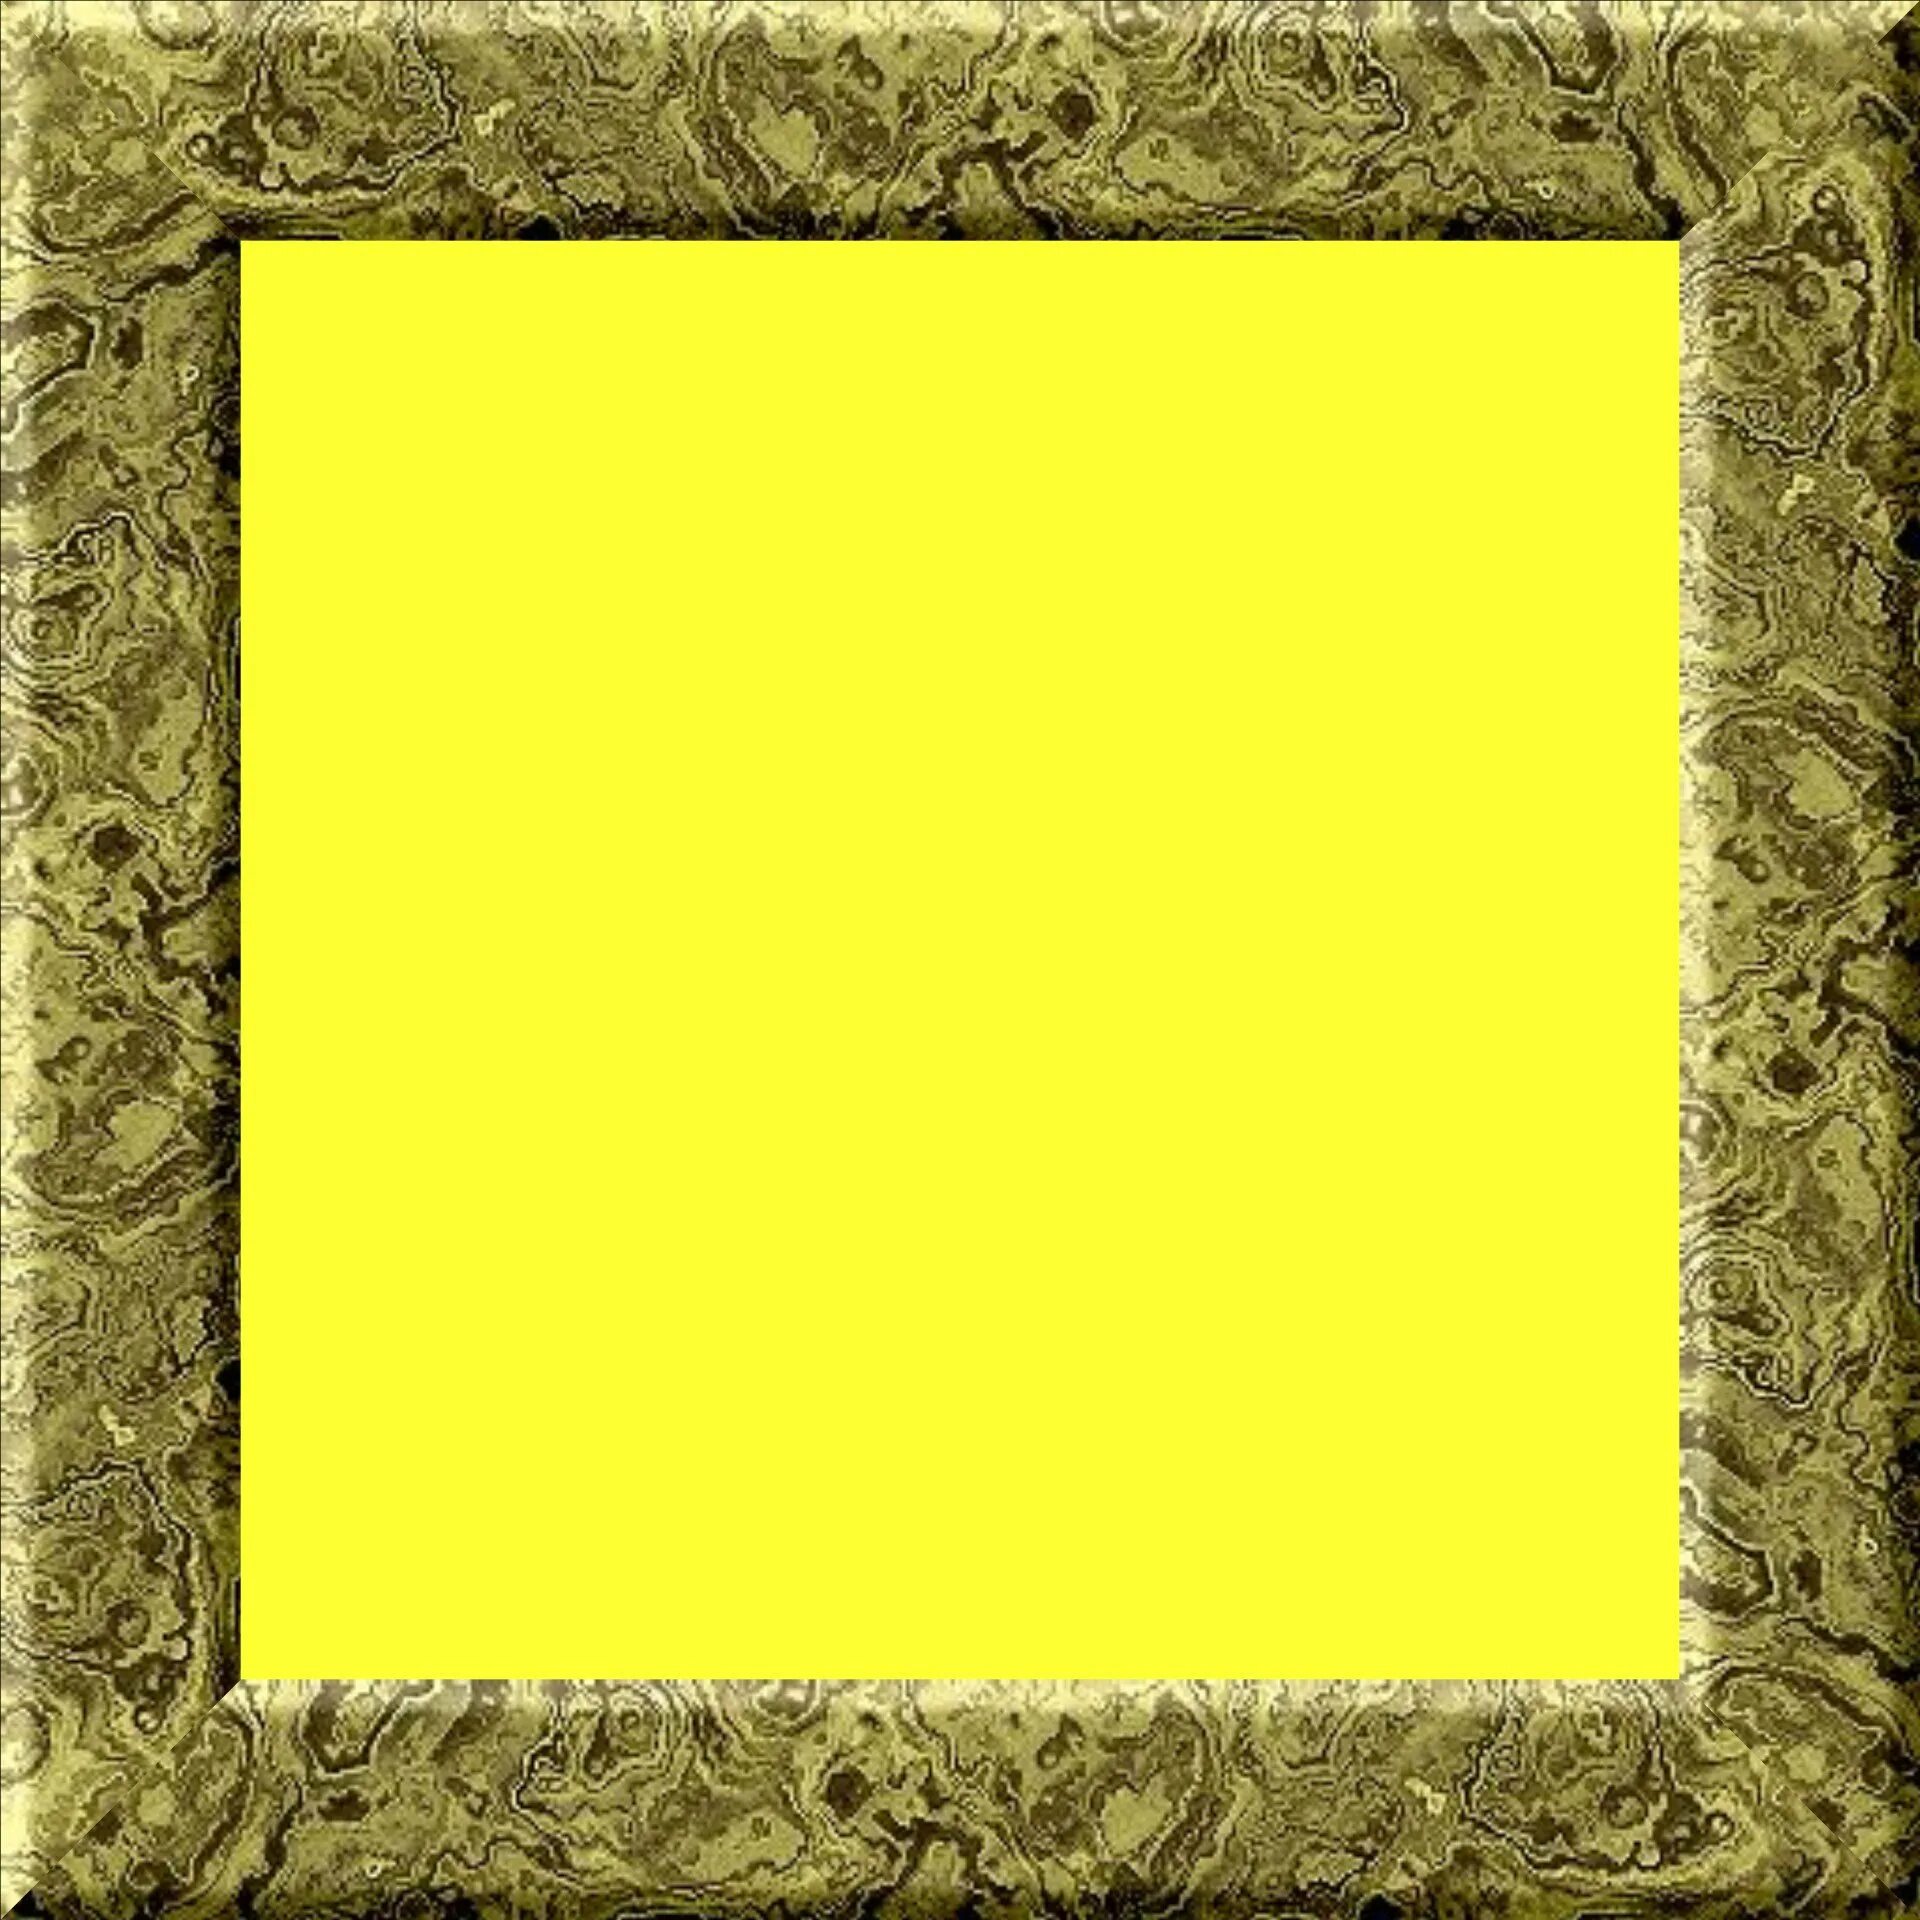 Желтая рамка вокруг экрана. Желтая рамка. Фоторамка желтая. Рамка желтого цвета. Красивая желтая рамка.